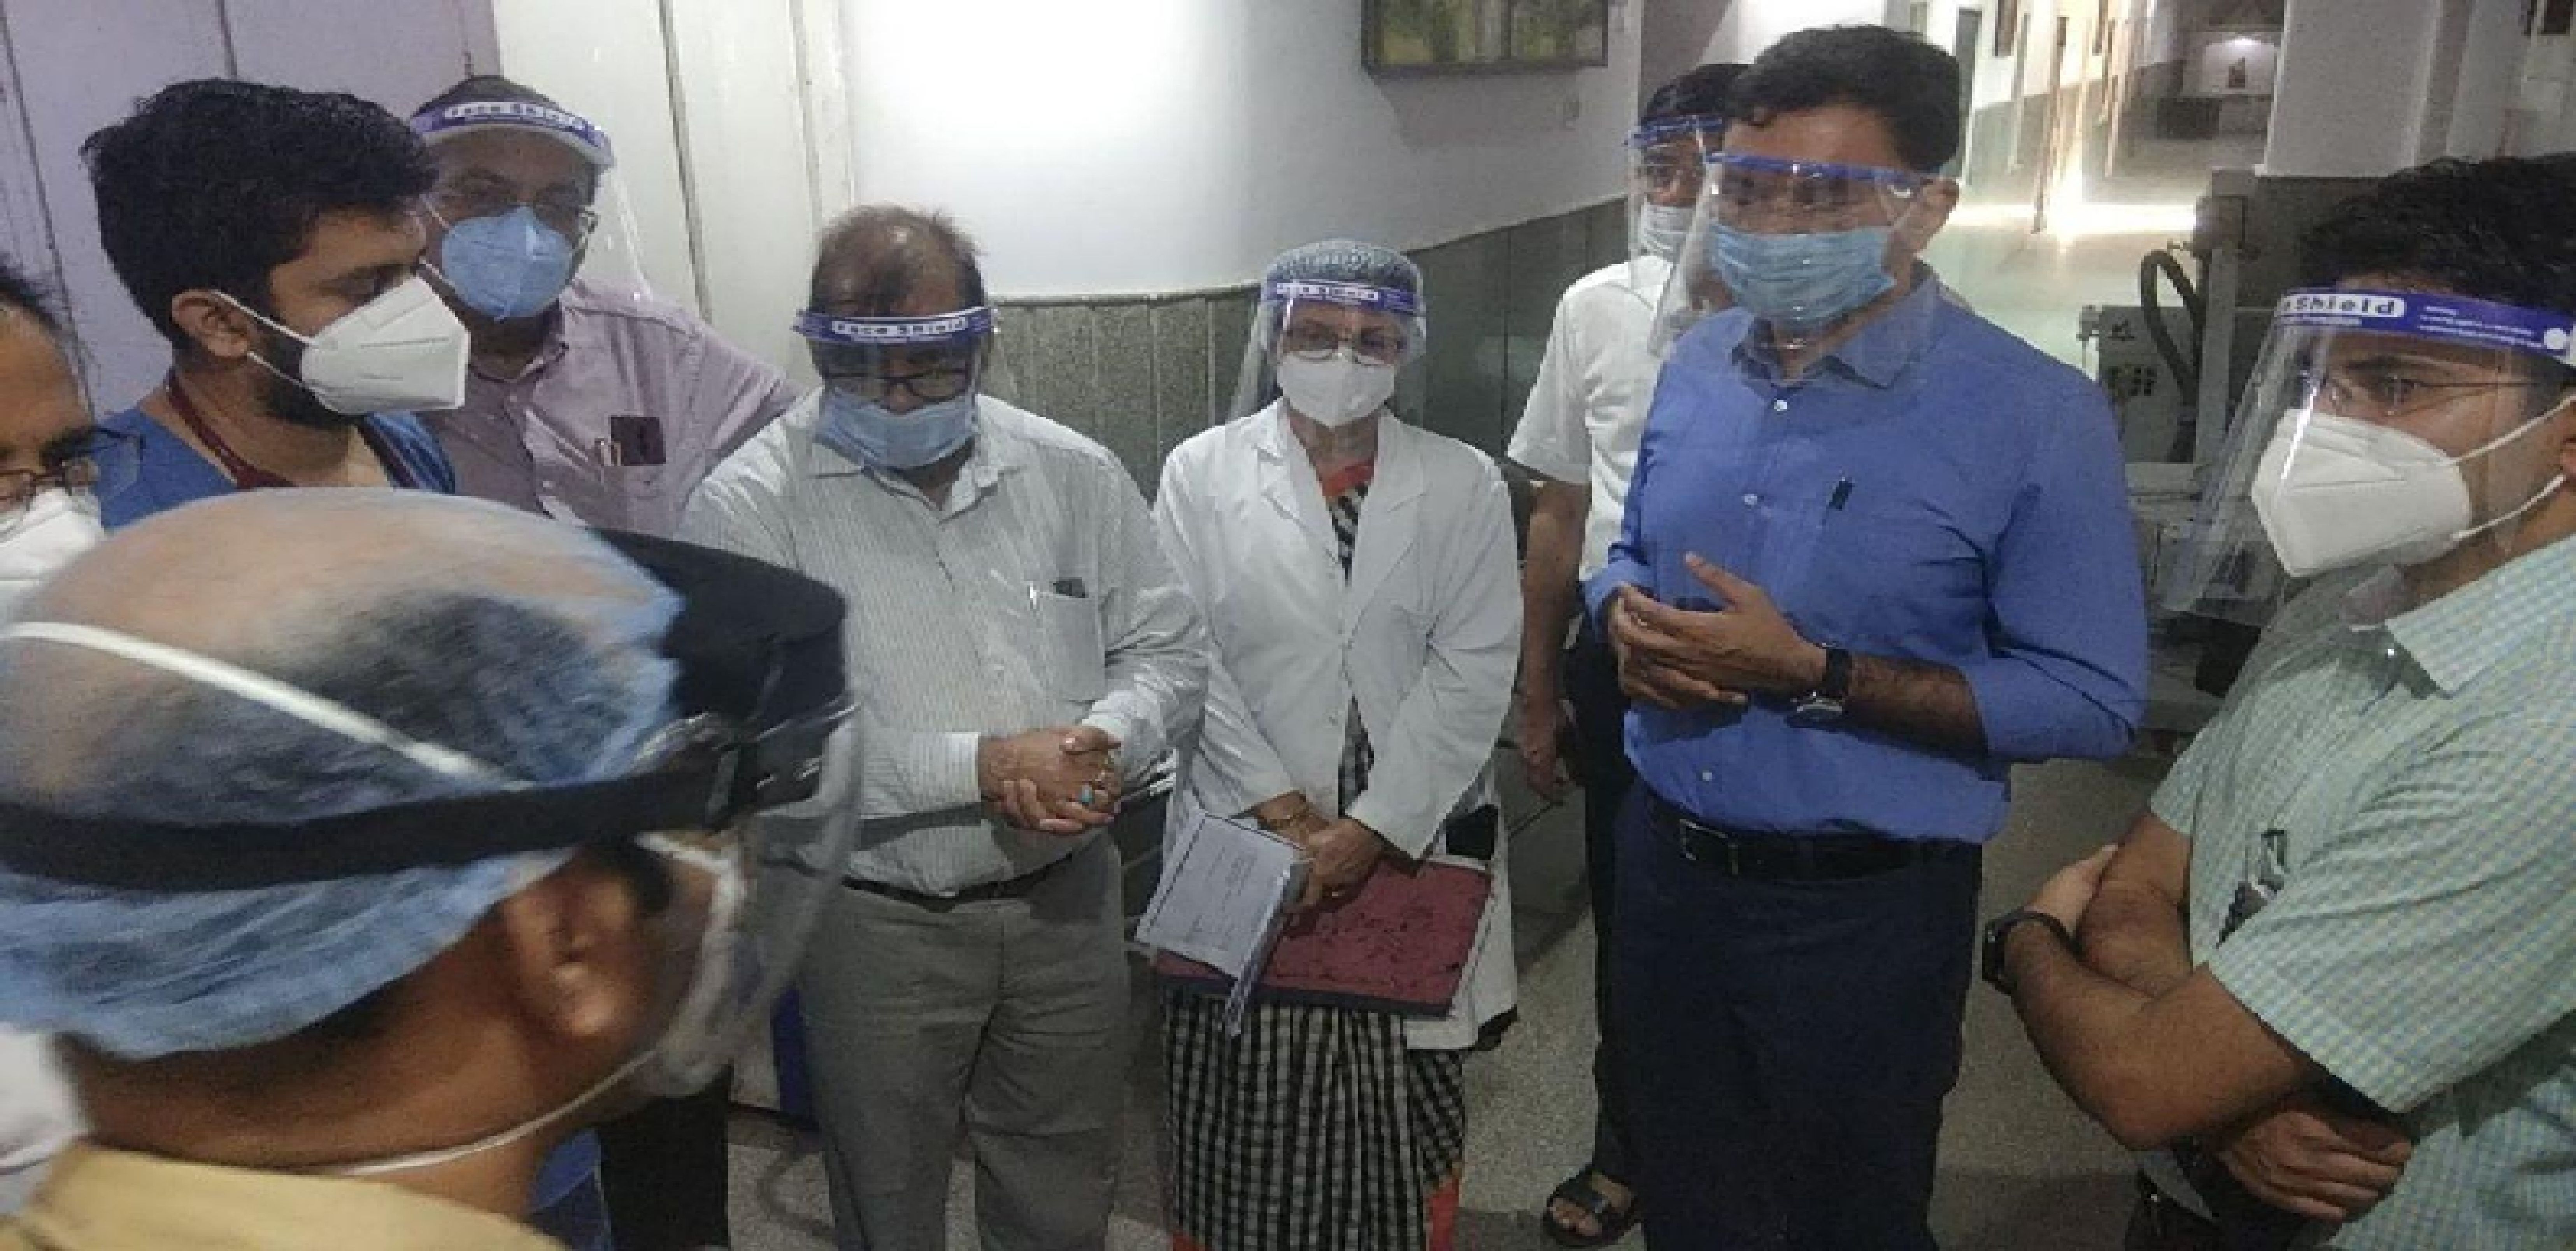 जोधपुर में चिकित्सा सचिव बोले- एक दिन में 8-10 मौतें क्यों हो रही है? डॉक्टर्स निष्कर्ष निकाले